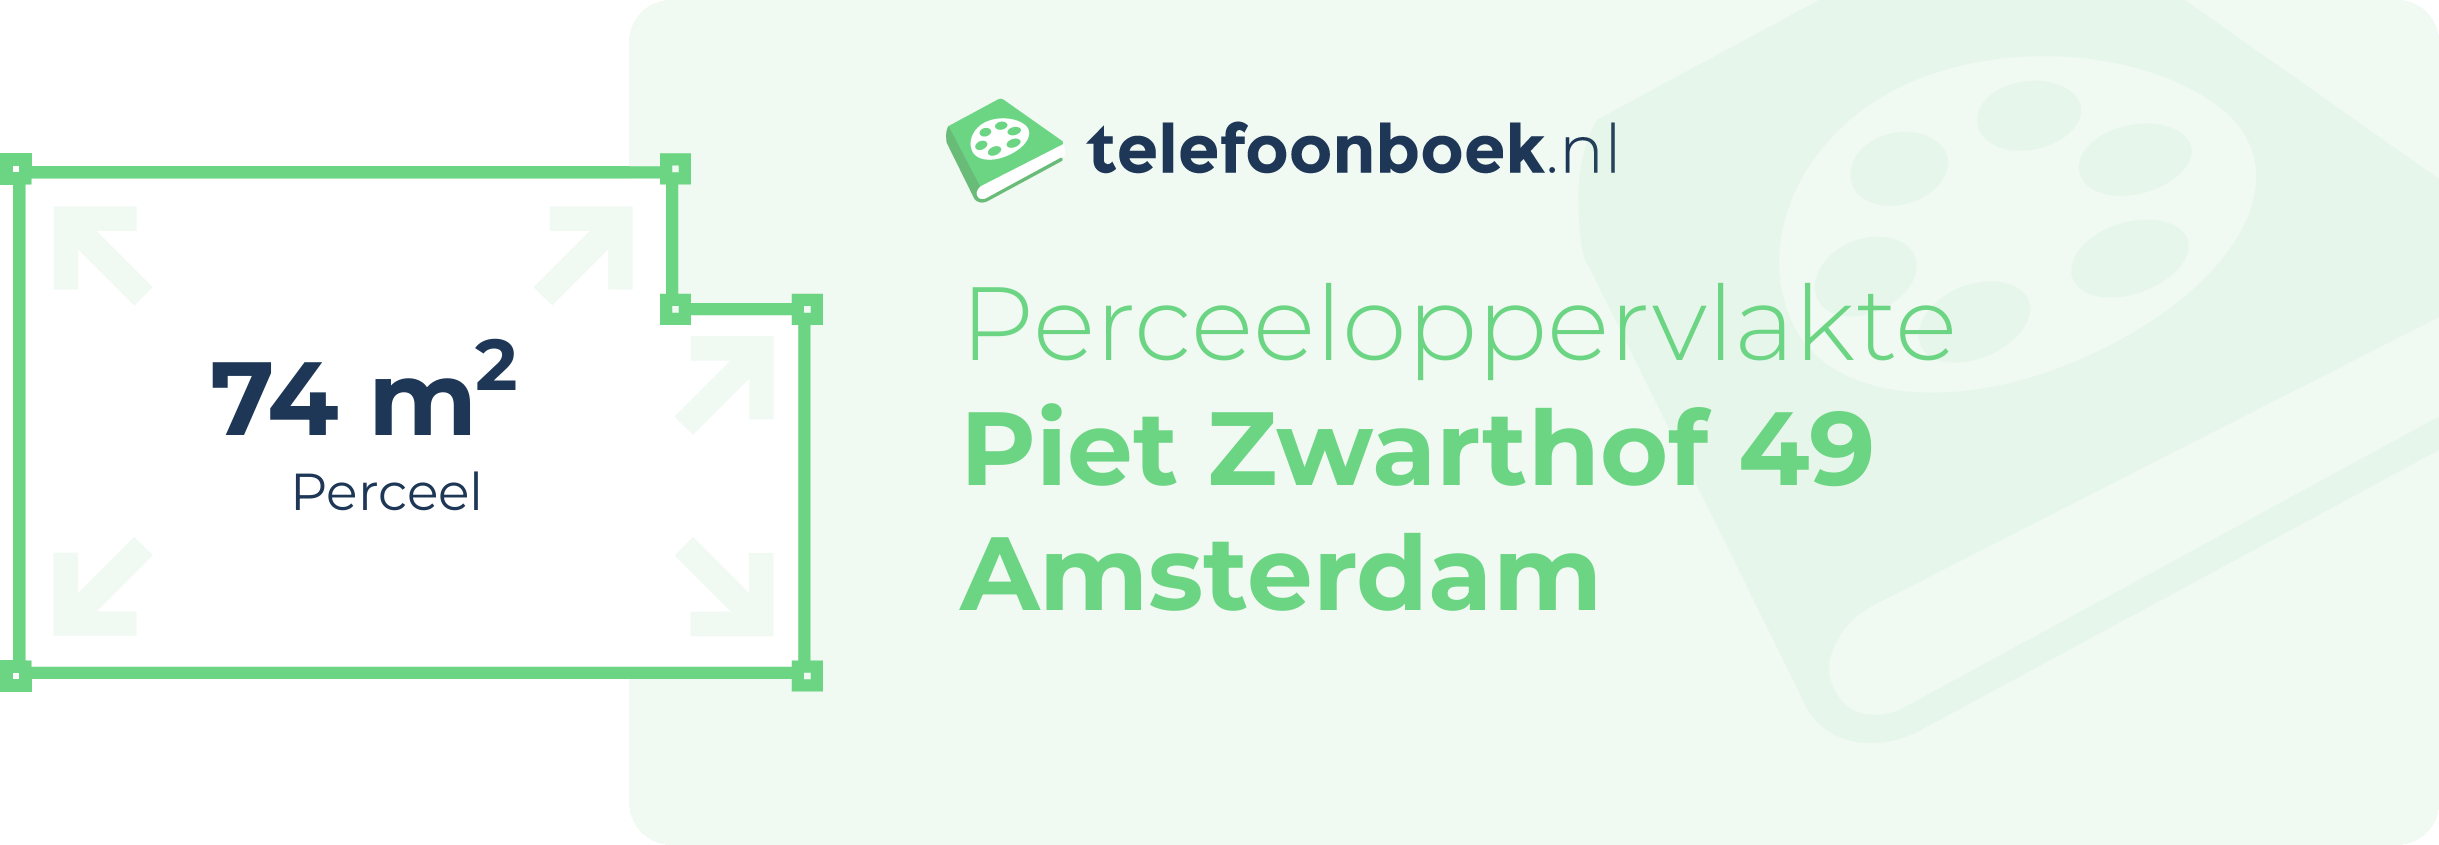 Perceeloppervlakte Piet Zwarthof 49 Amsterdam